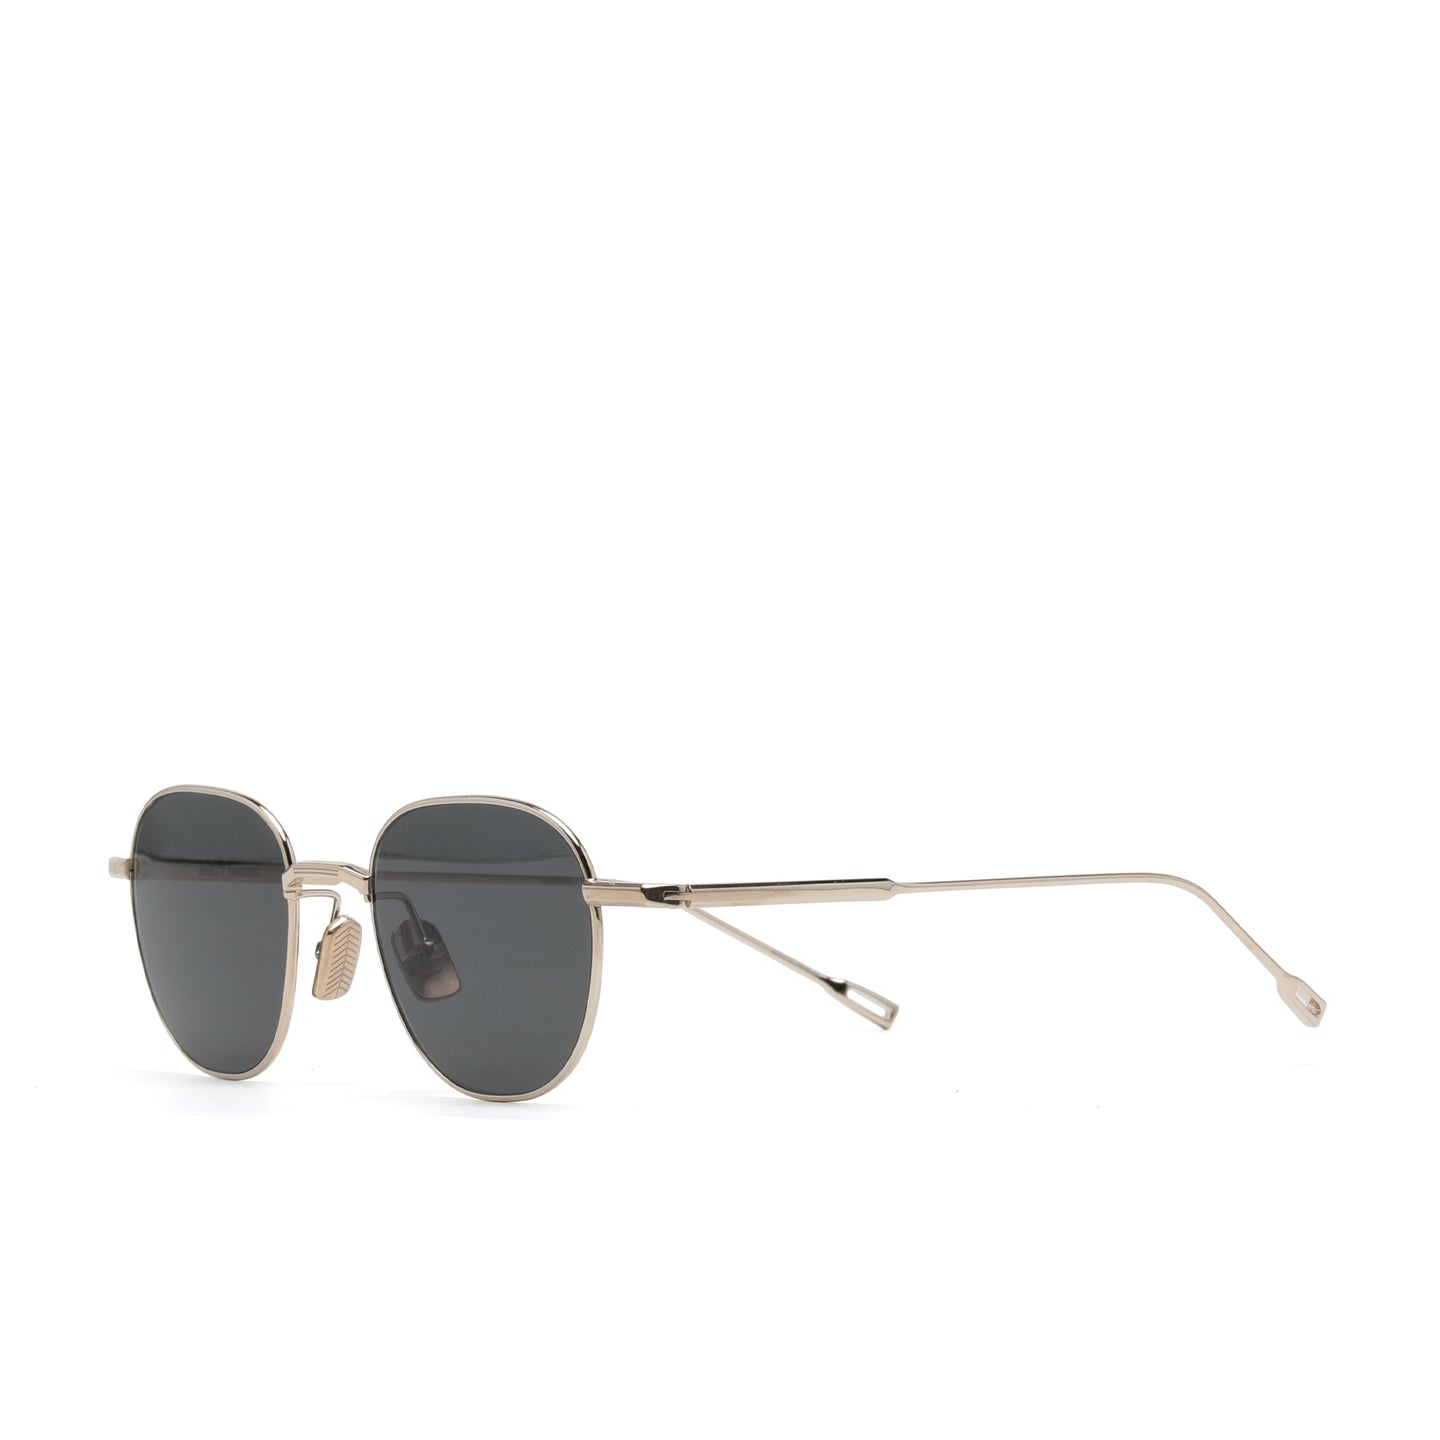 Wacko Maria x Native Son's Type-2 Sunglasses Gray